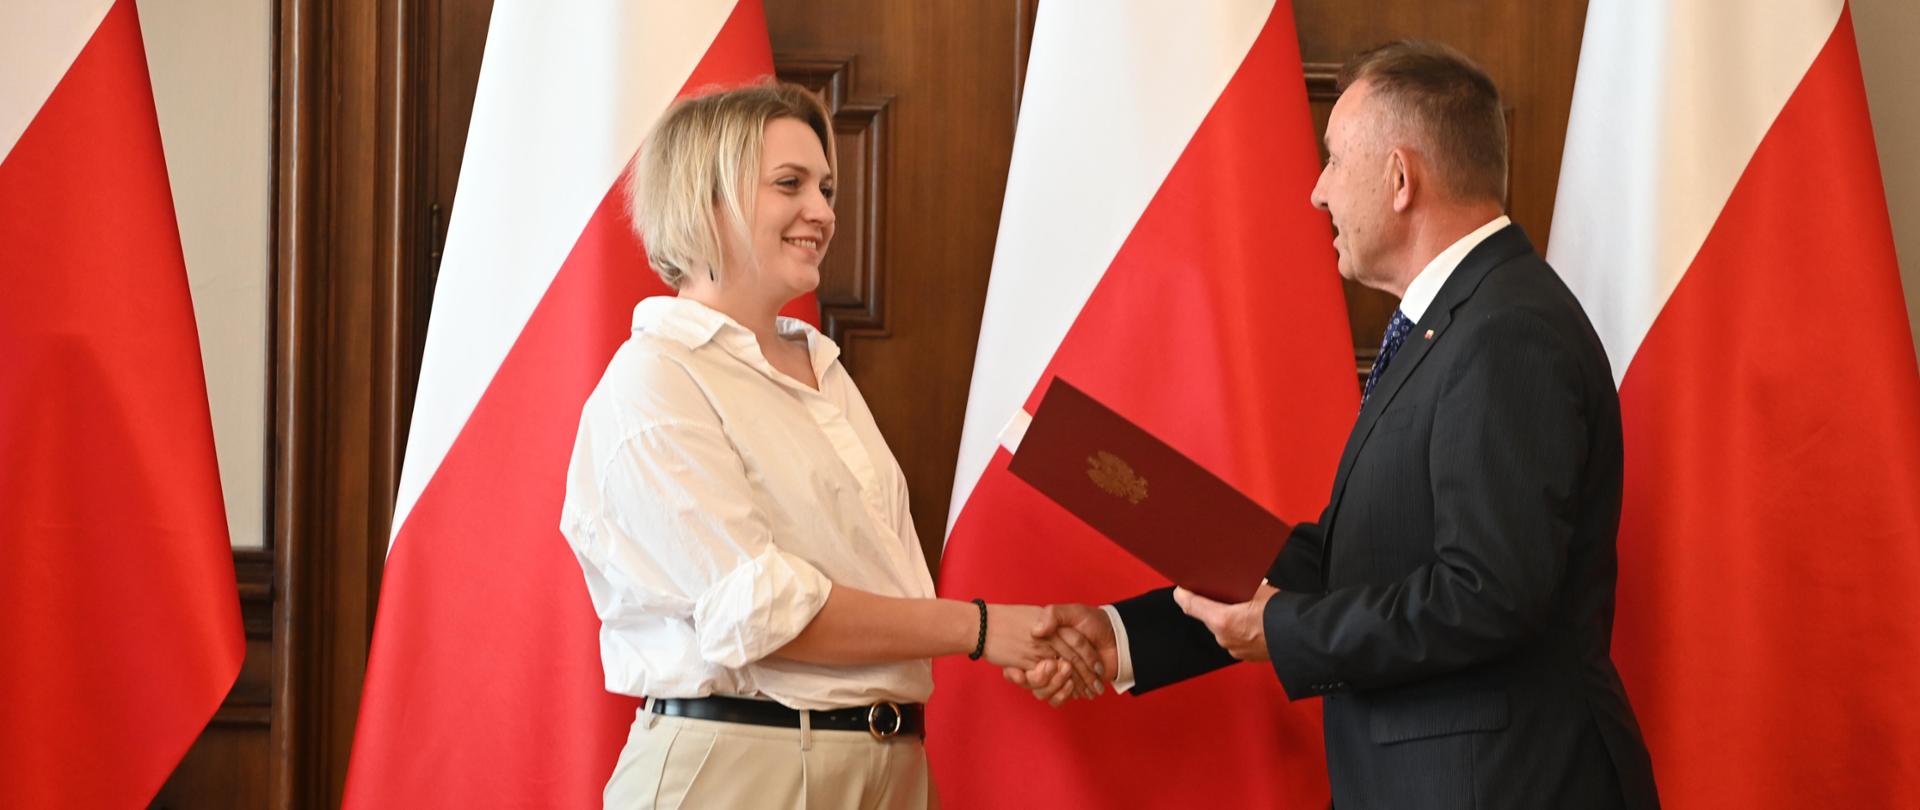 Wojewoda Łódzki Karol Młynarczyk wręcza akt nadania obywatelstwa polskiego 